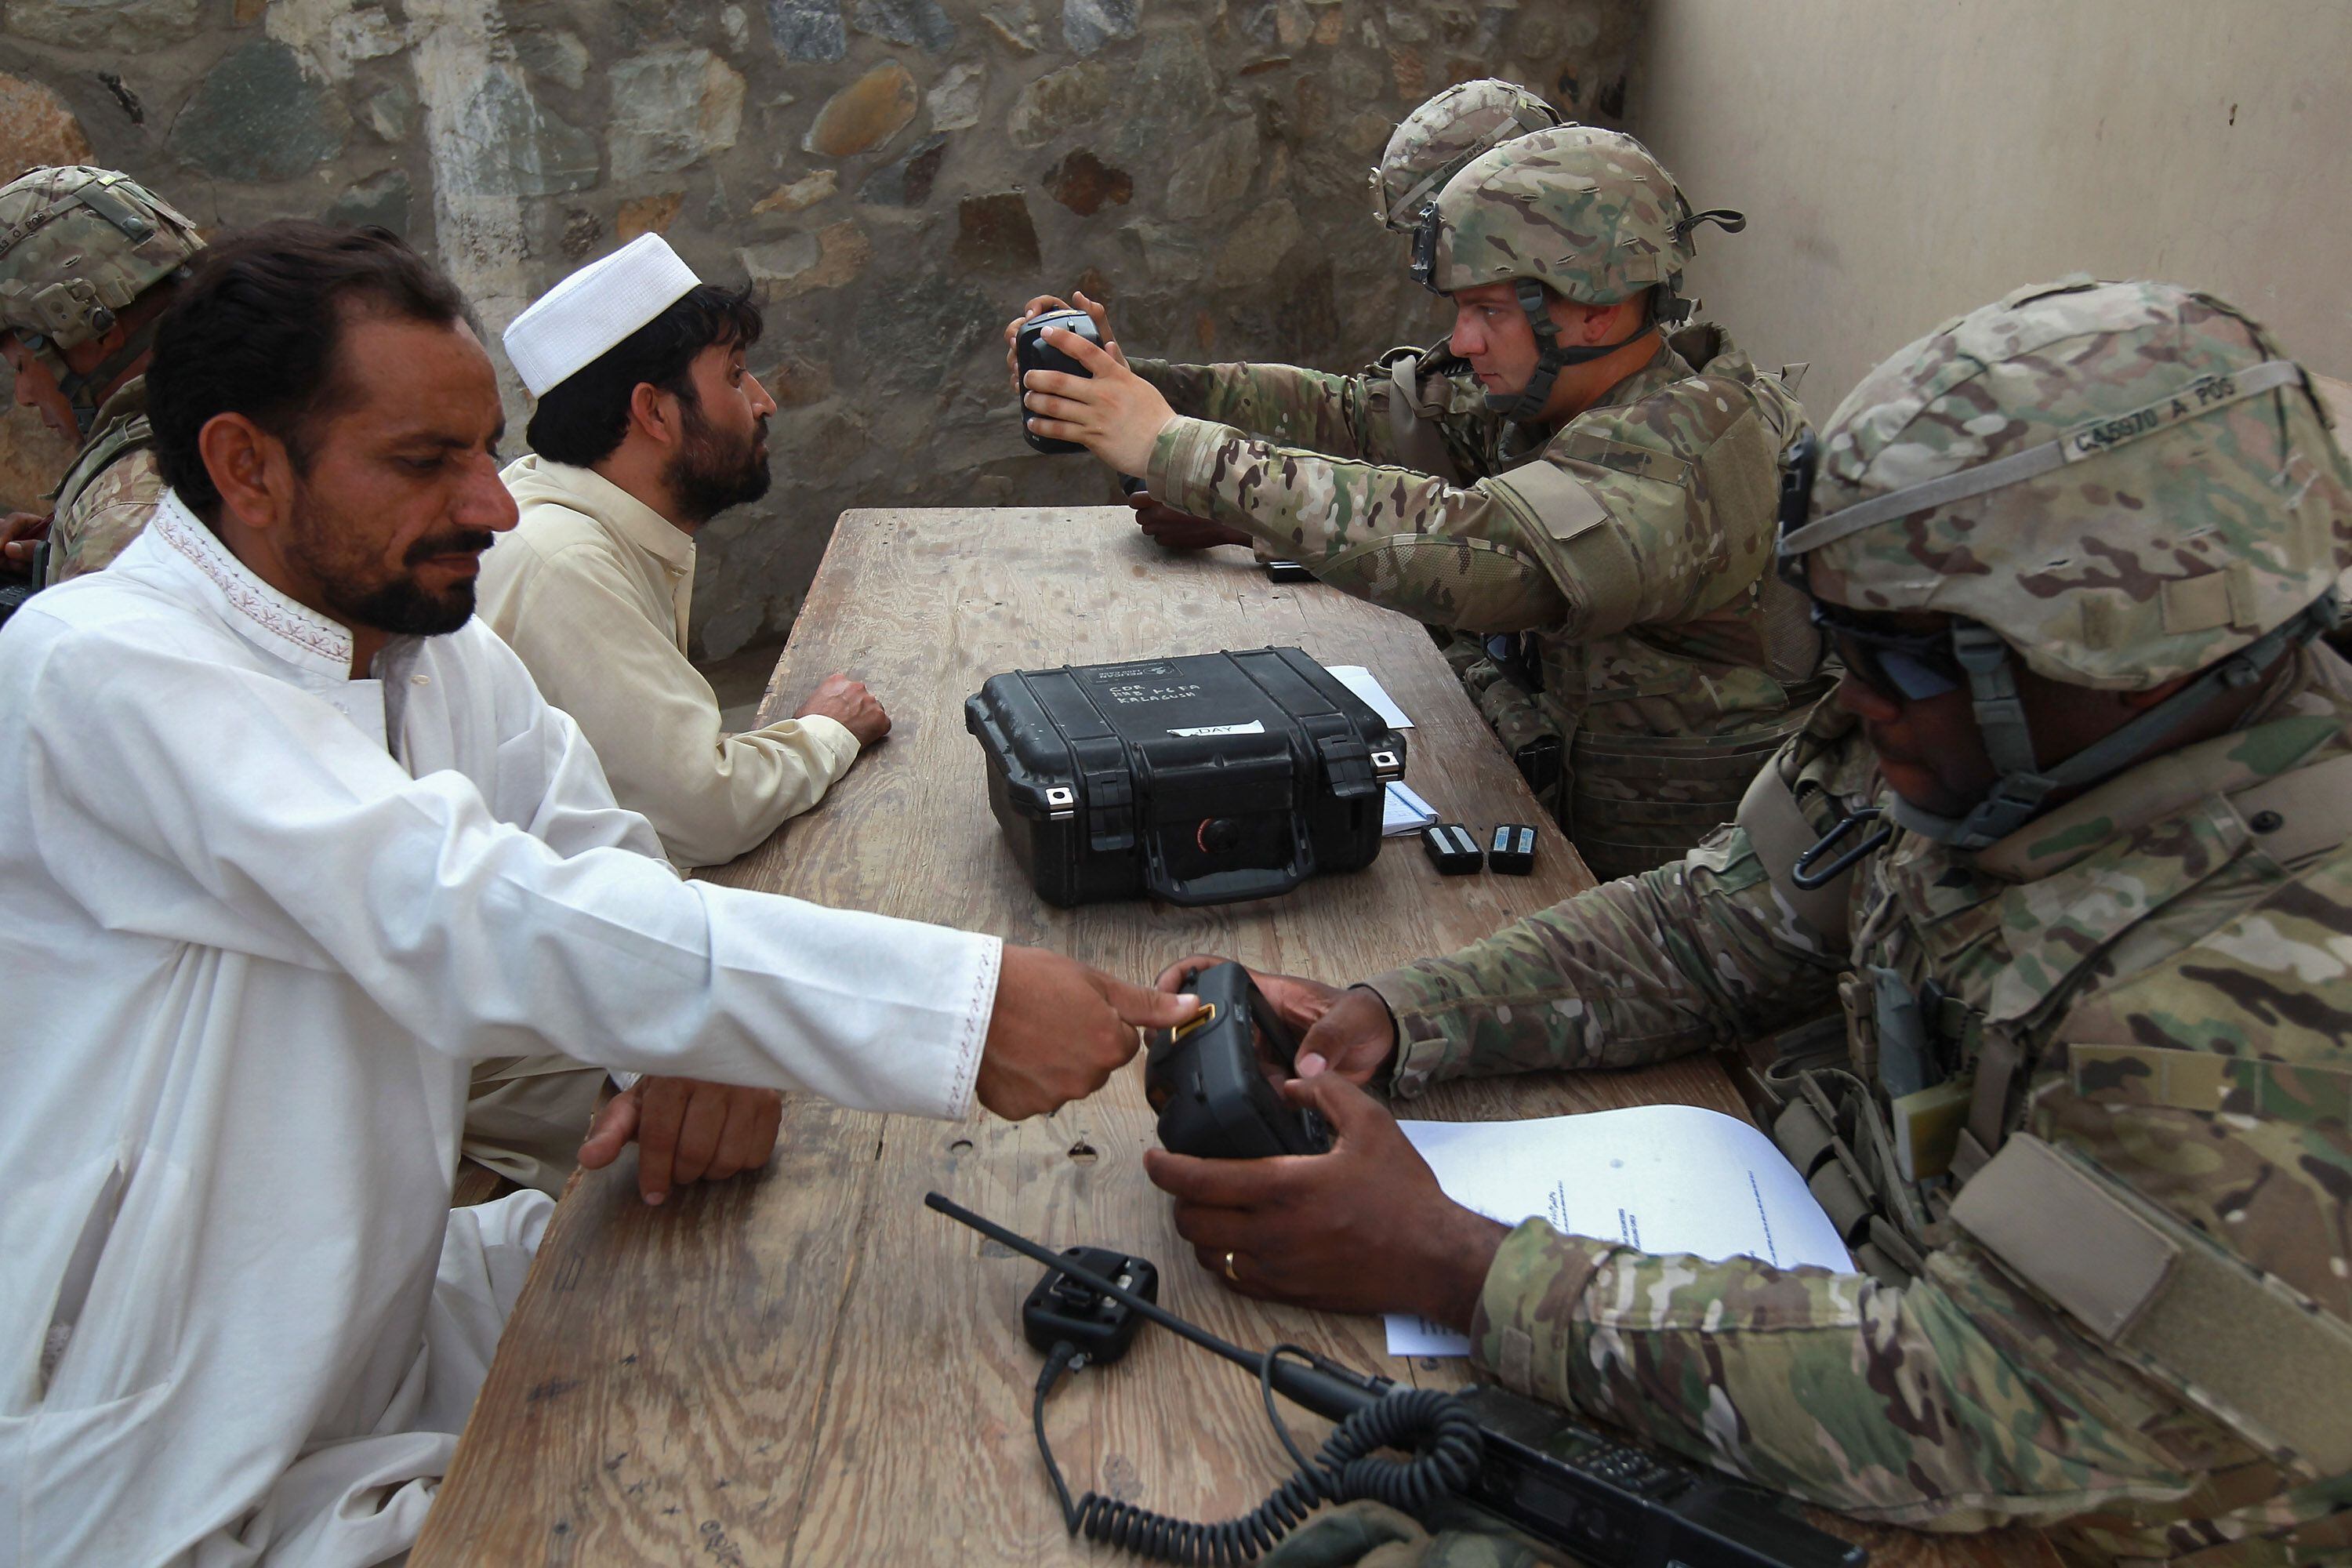 Soldados estadounidenses registran la huella dactilar y el iris de dos hombres que entran a Afganistán desde Pakistán.